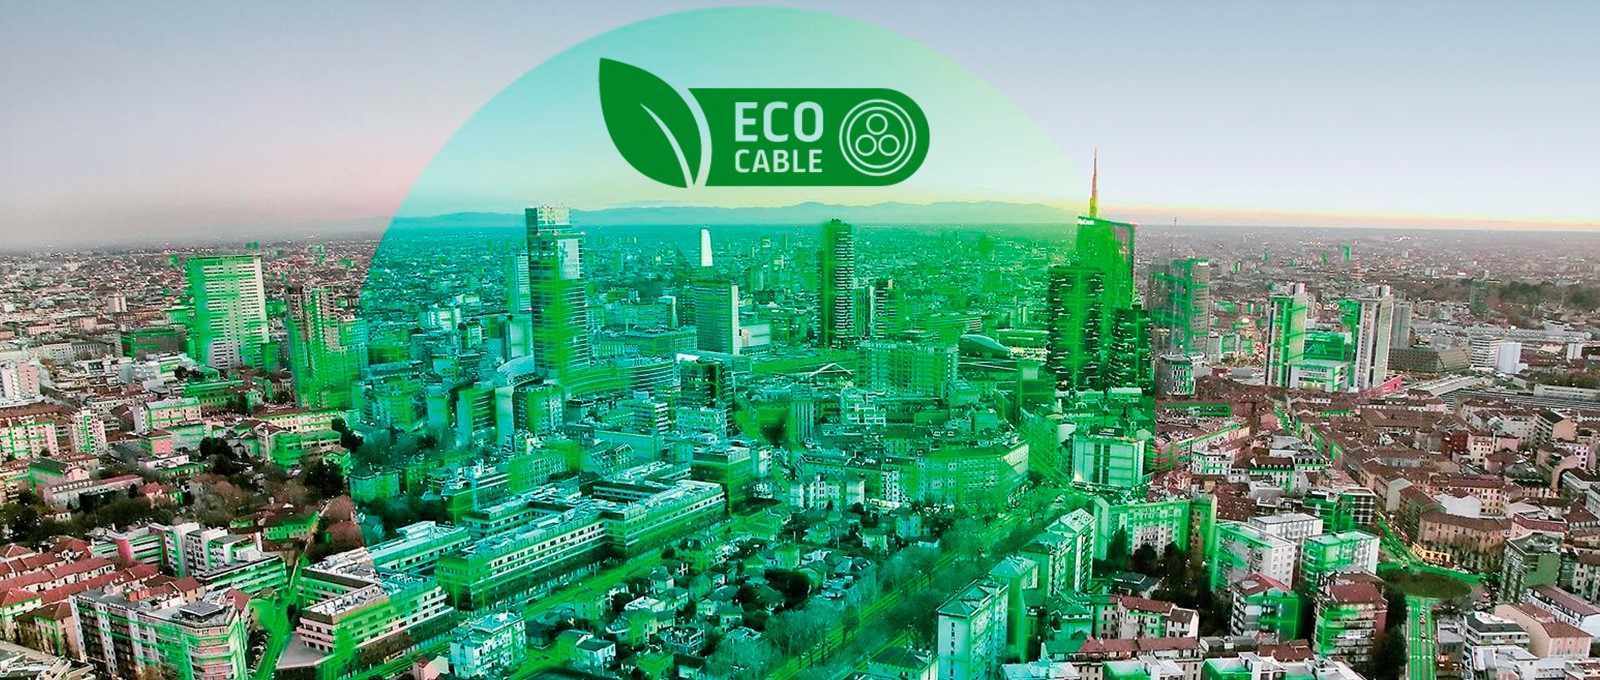 Prysmian Group lanza “Eco Cable”, la primera etiqueta verde de la industria del cable
